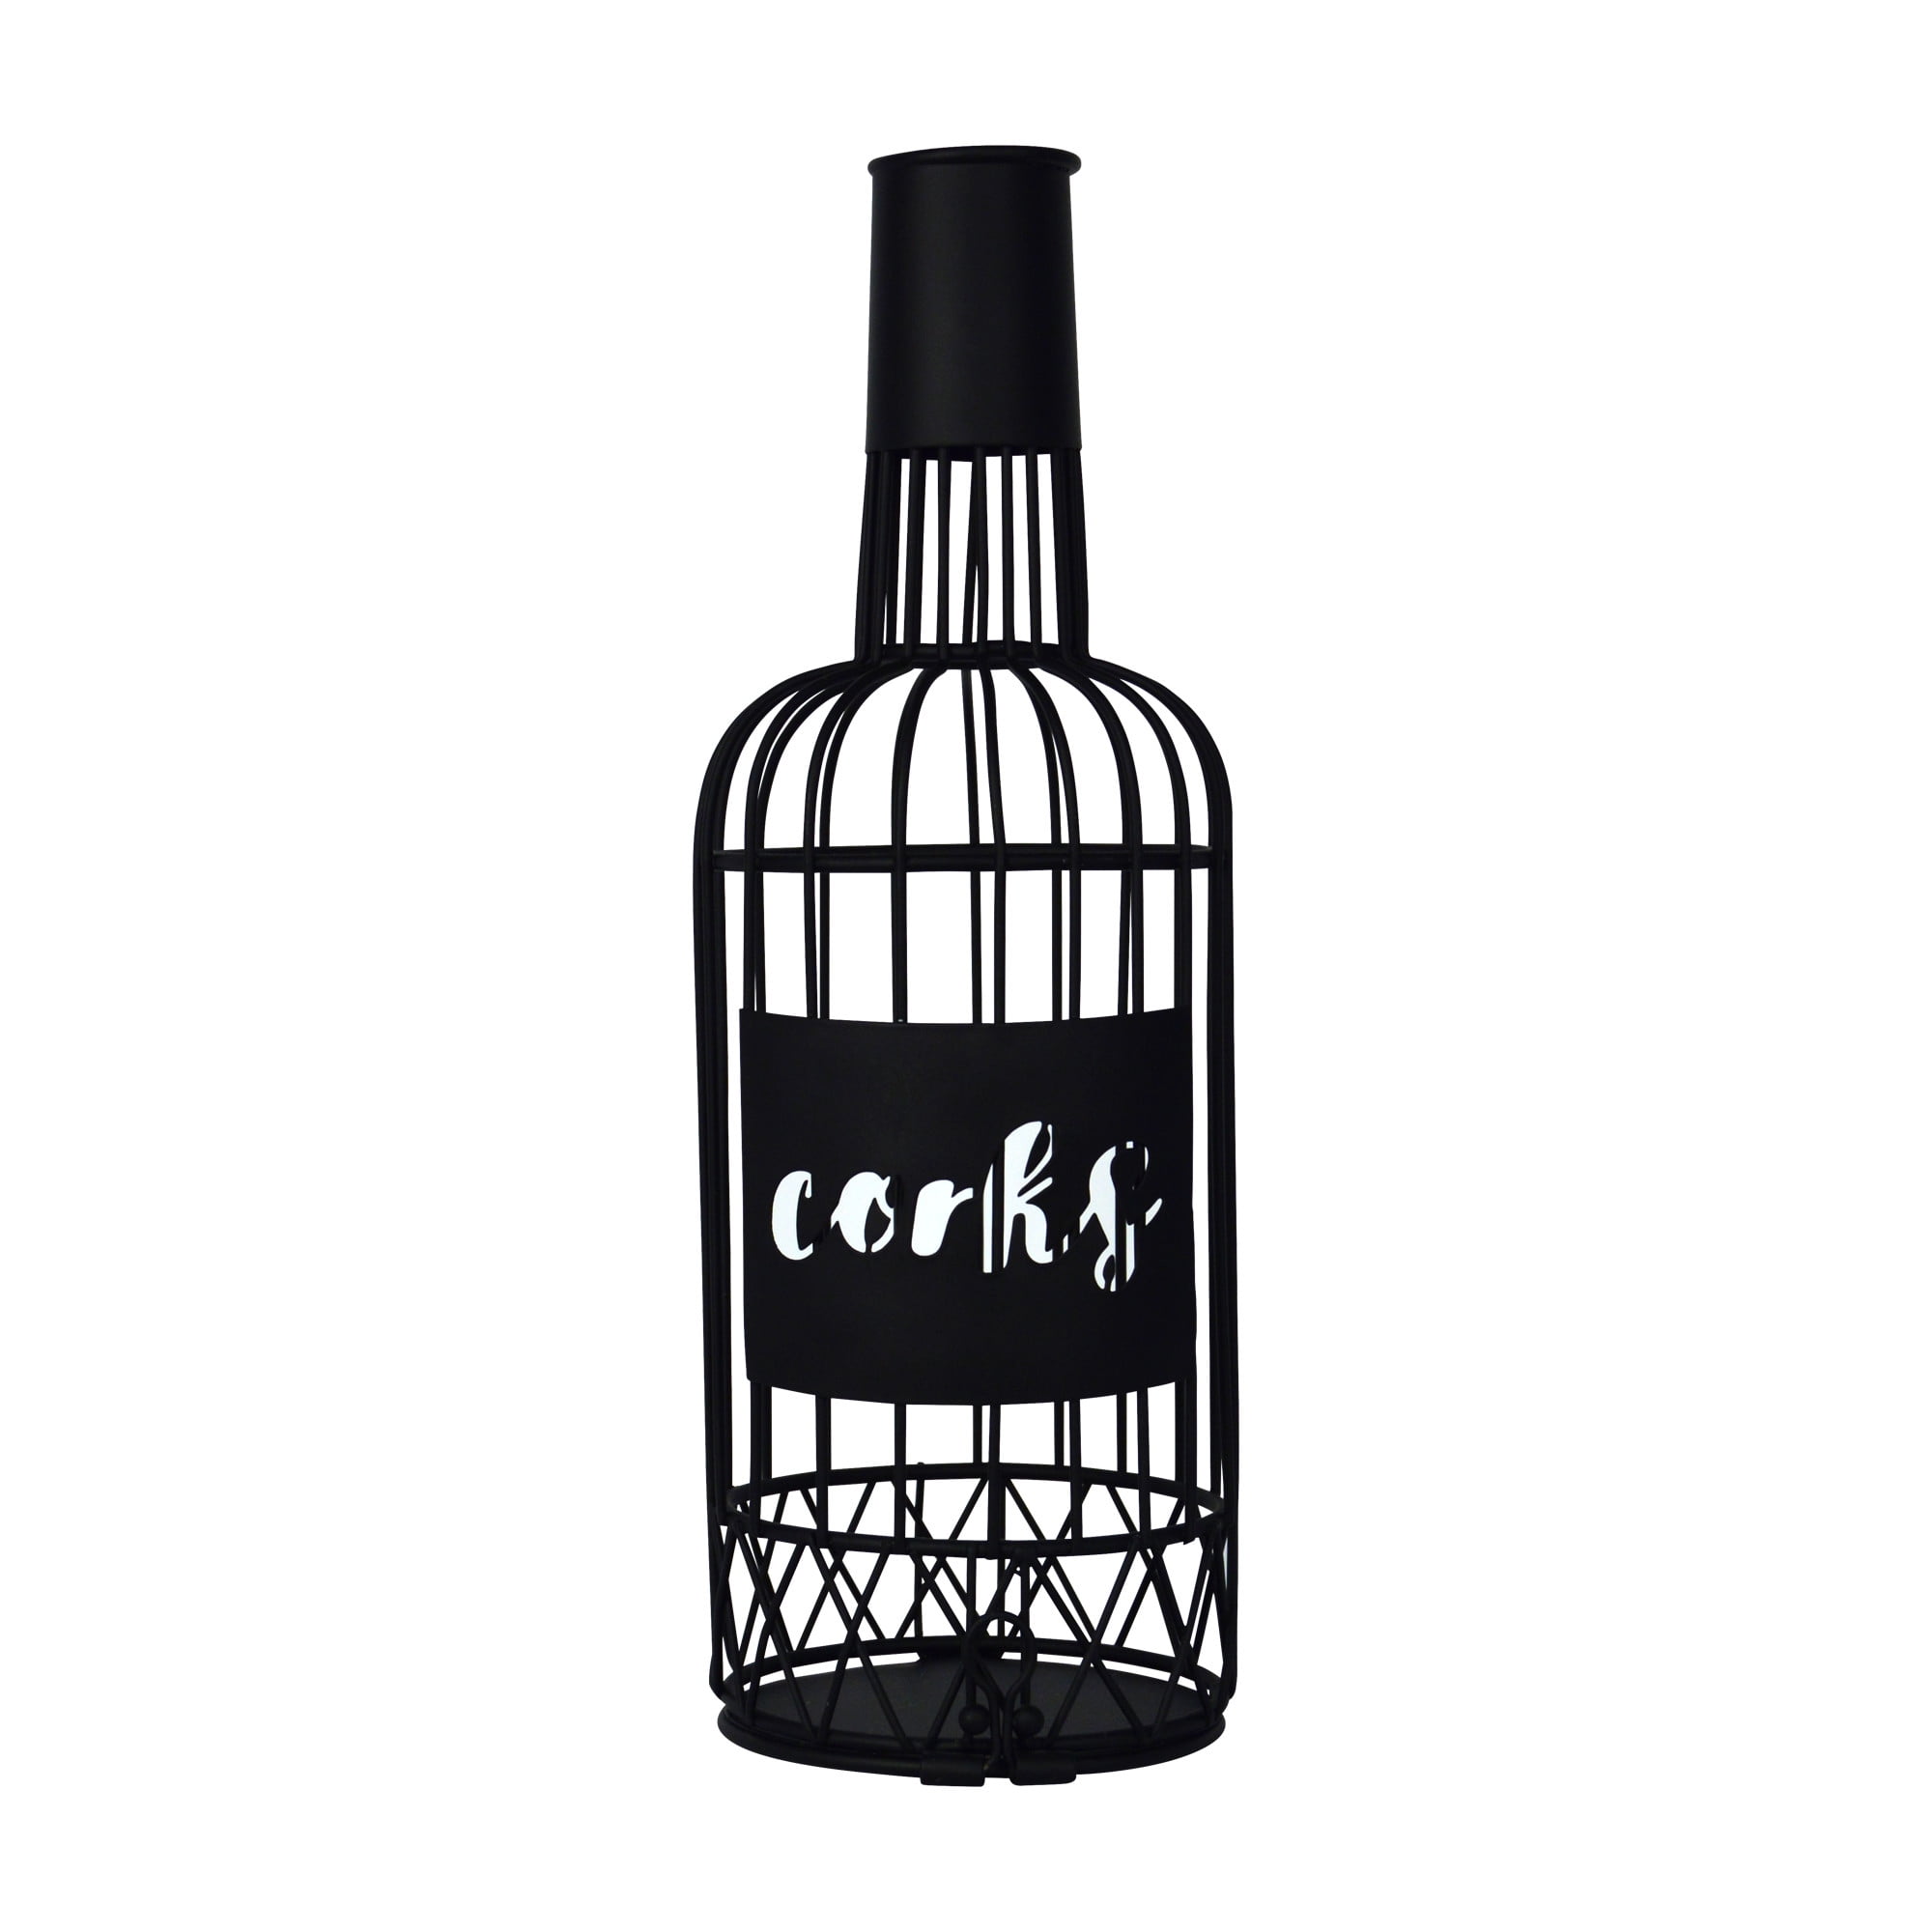 Liquor bottle and cork holder